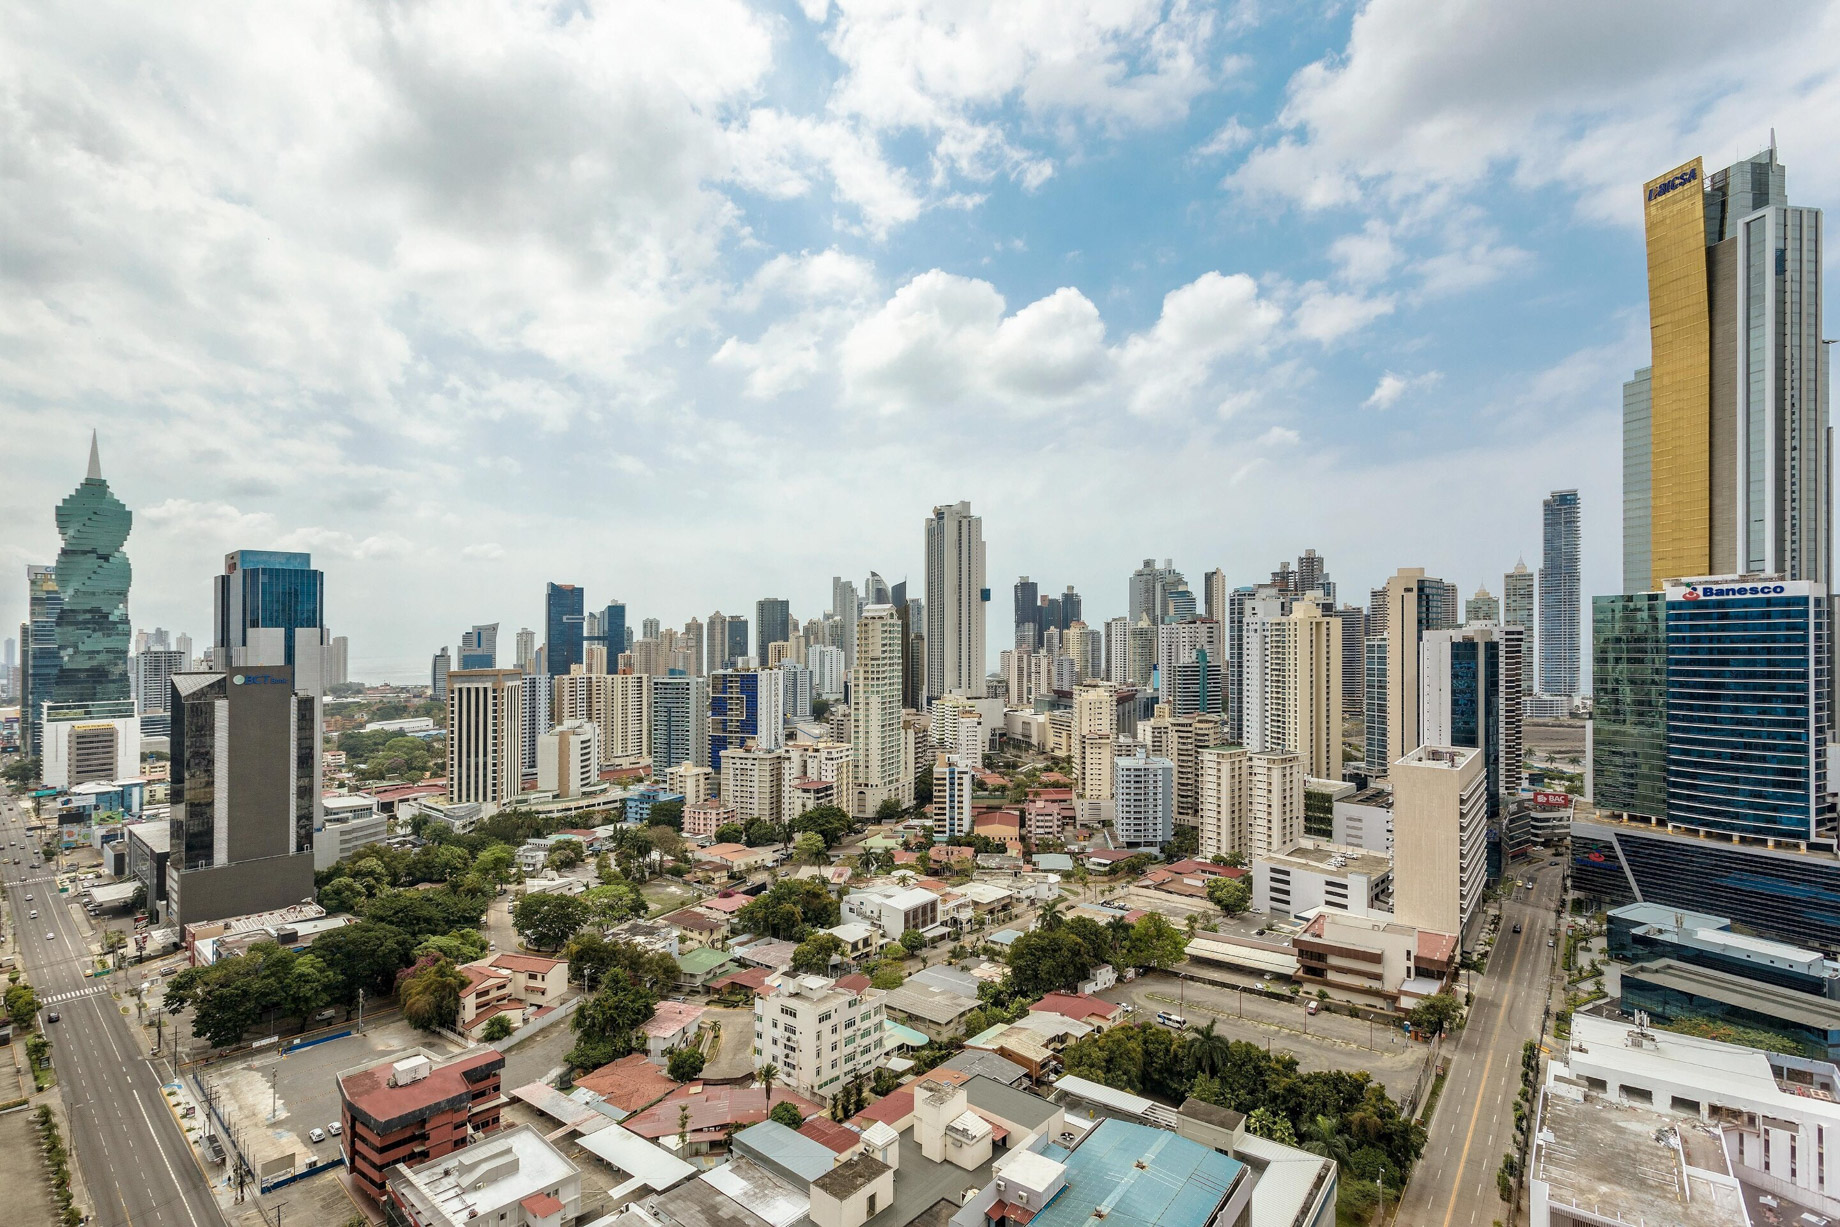 W Panama Hotel – Panama City, Panama – City View